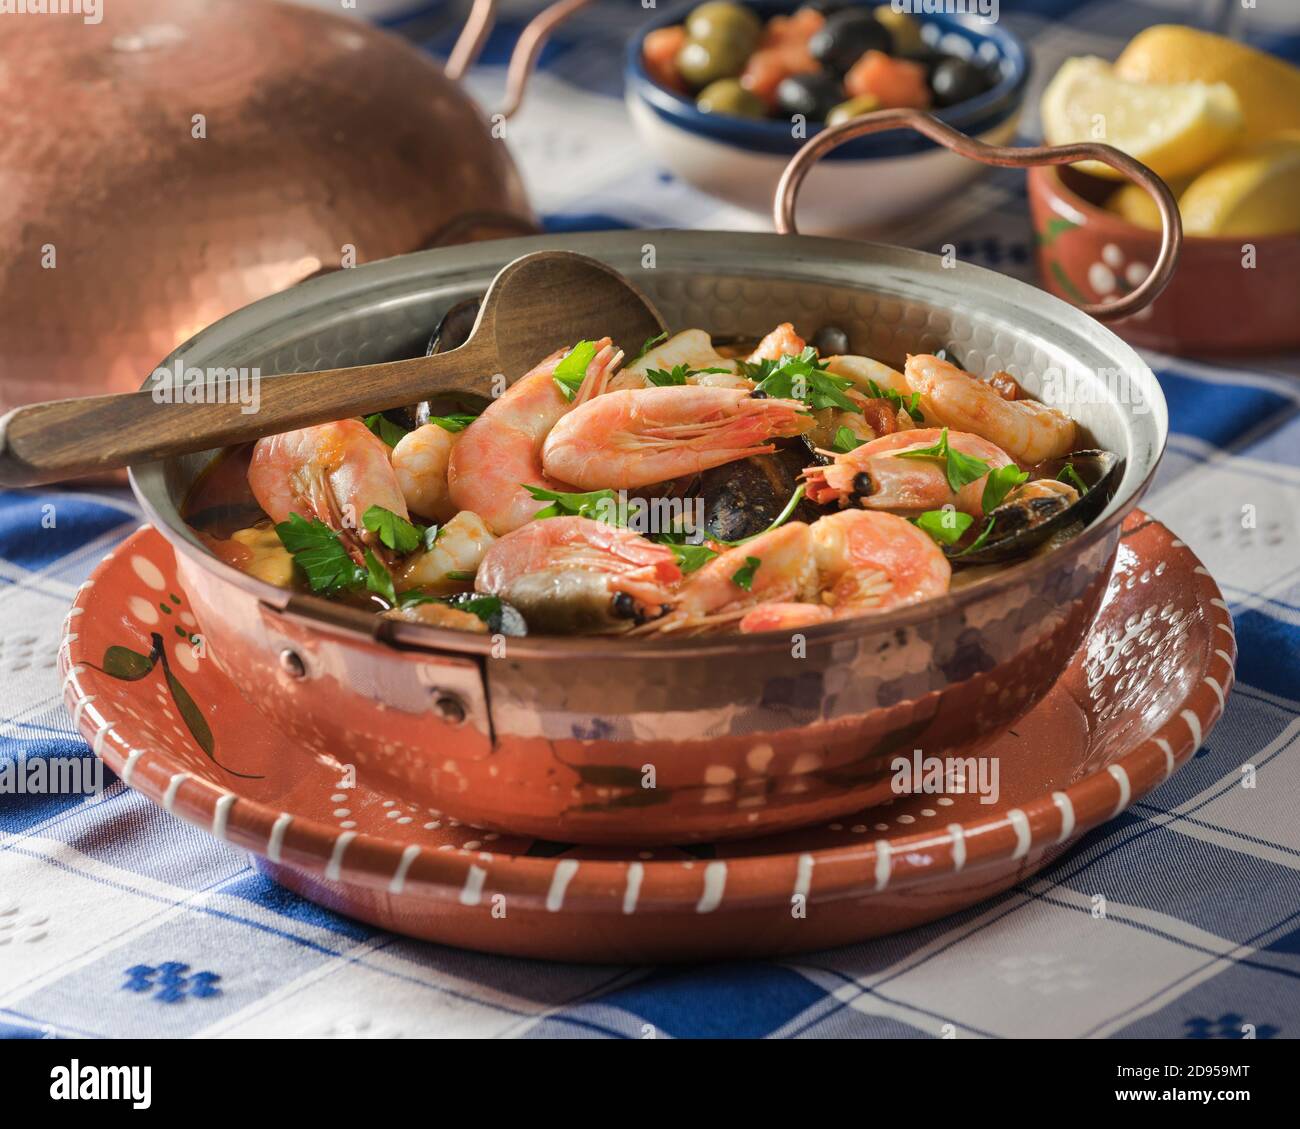 Cataplana de mariscos. Seafood casserole. Food Portugal Stock Photo - Alamy